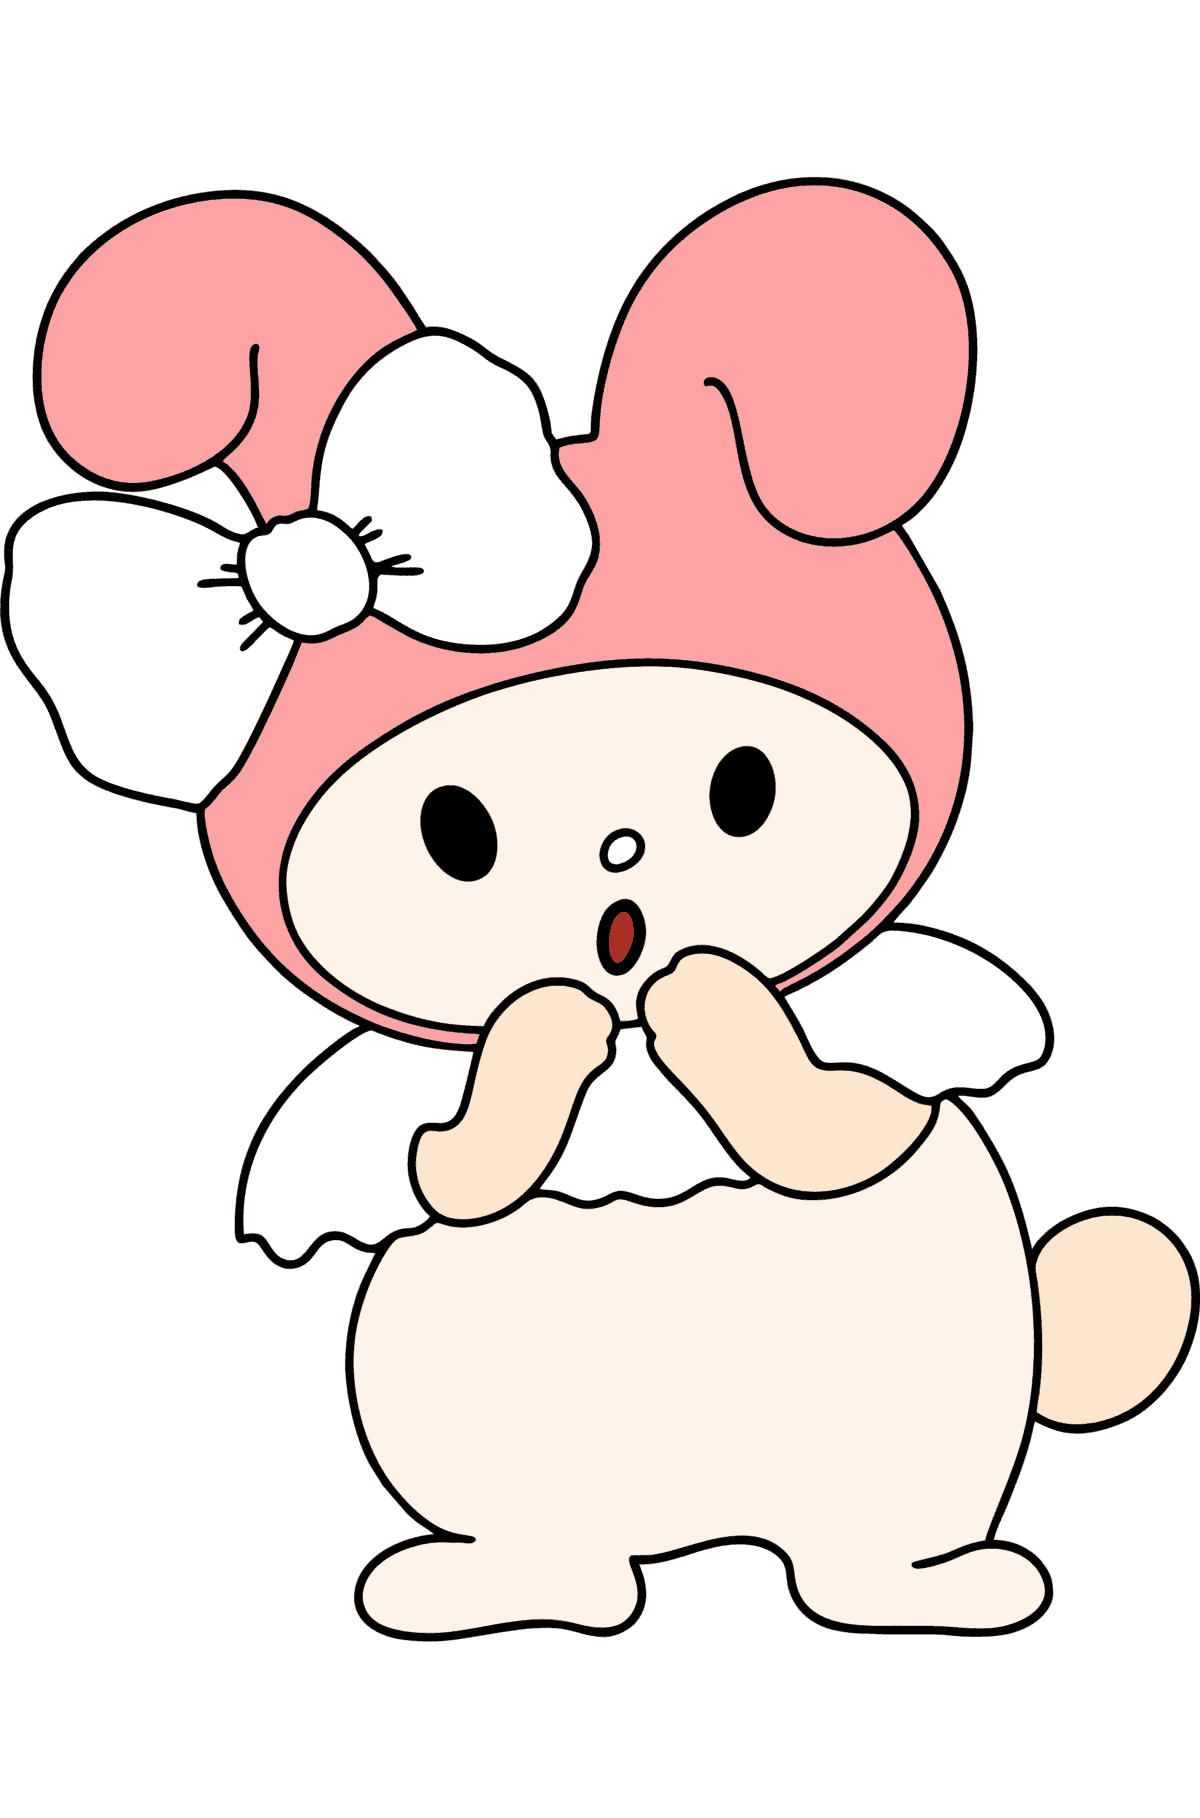 Desenho de Hello Kitty My Melody para colorir - Imagens para Colorir para Crianças